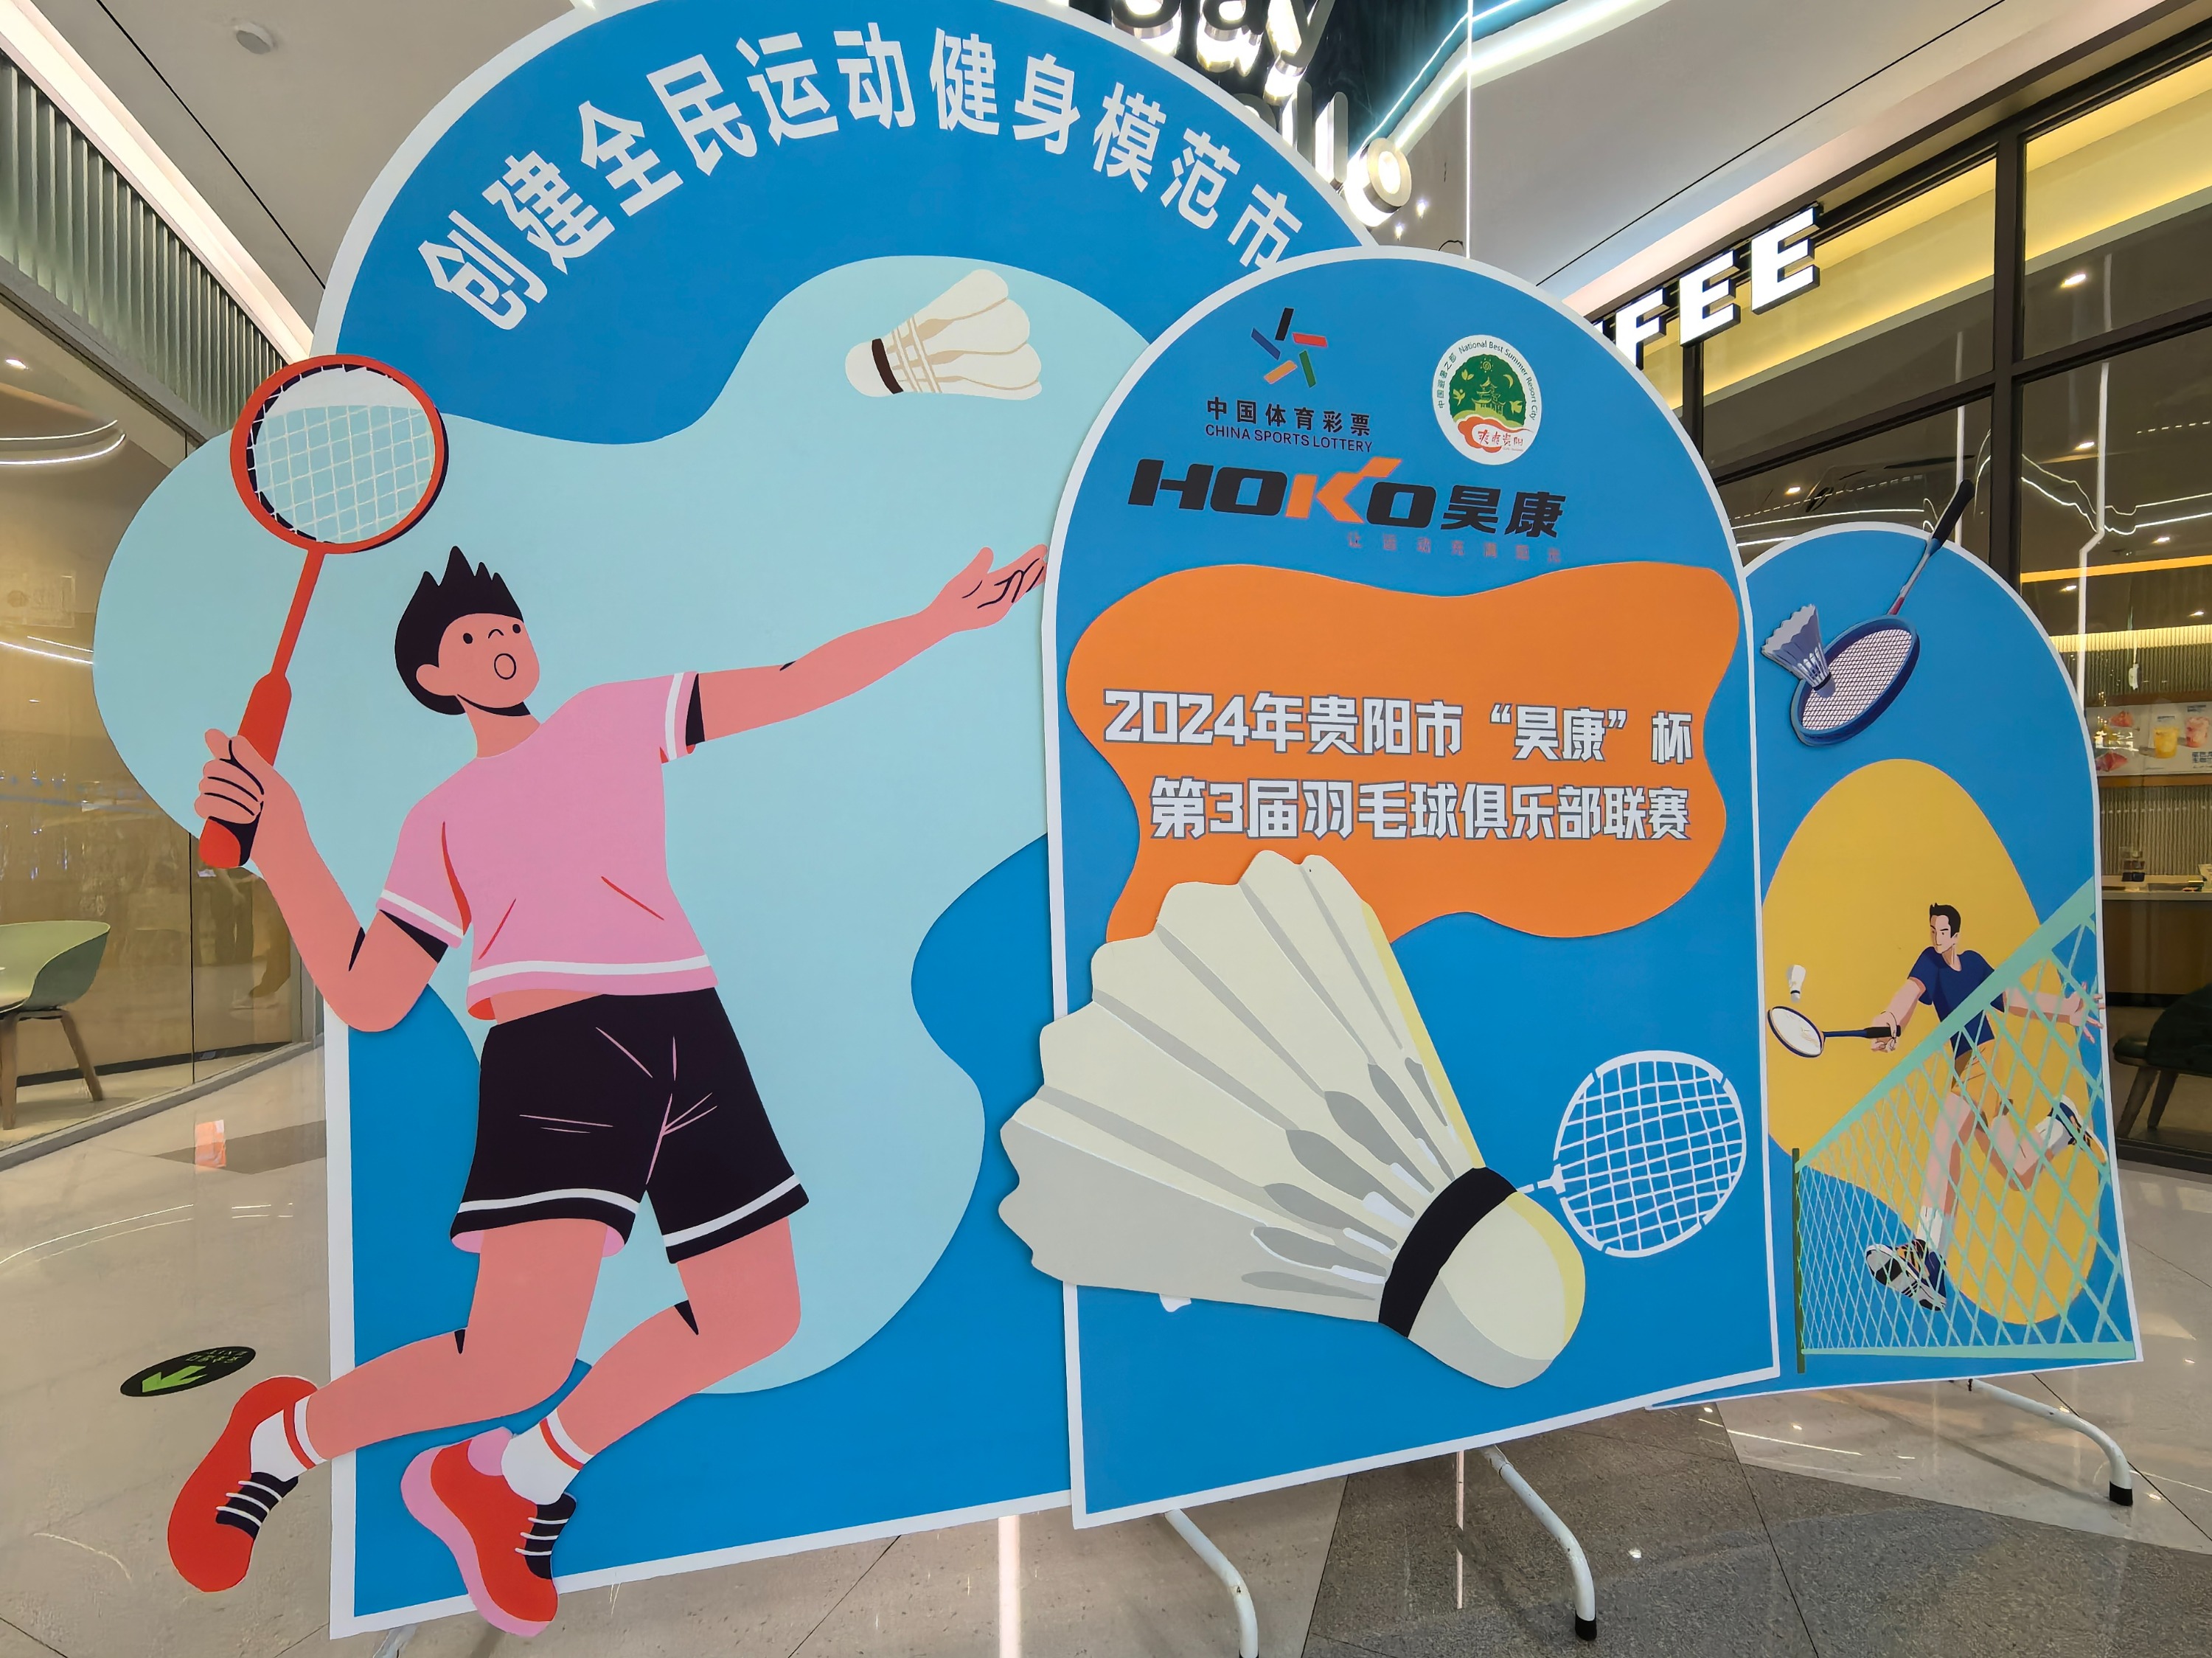 2024年贵阳市昊康杯第3届羽毛球俱乐部联赛总决赛开幕式暨贵阳市第